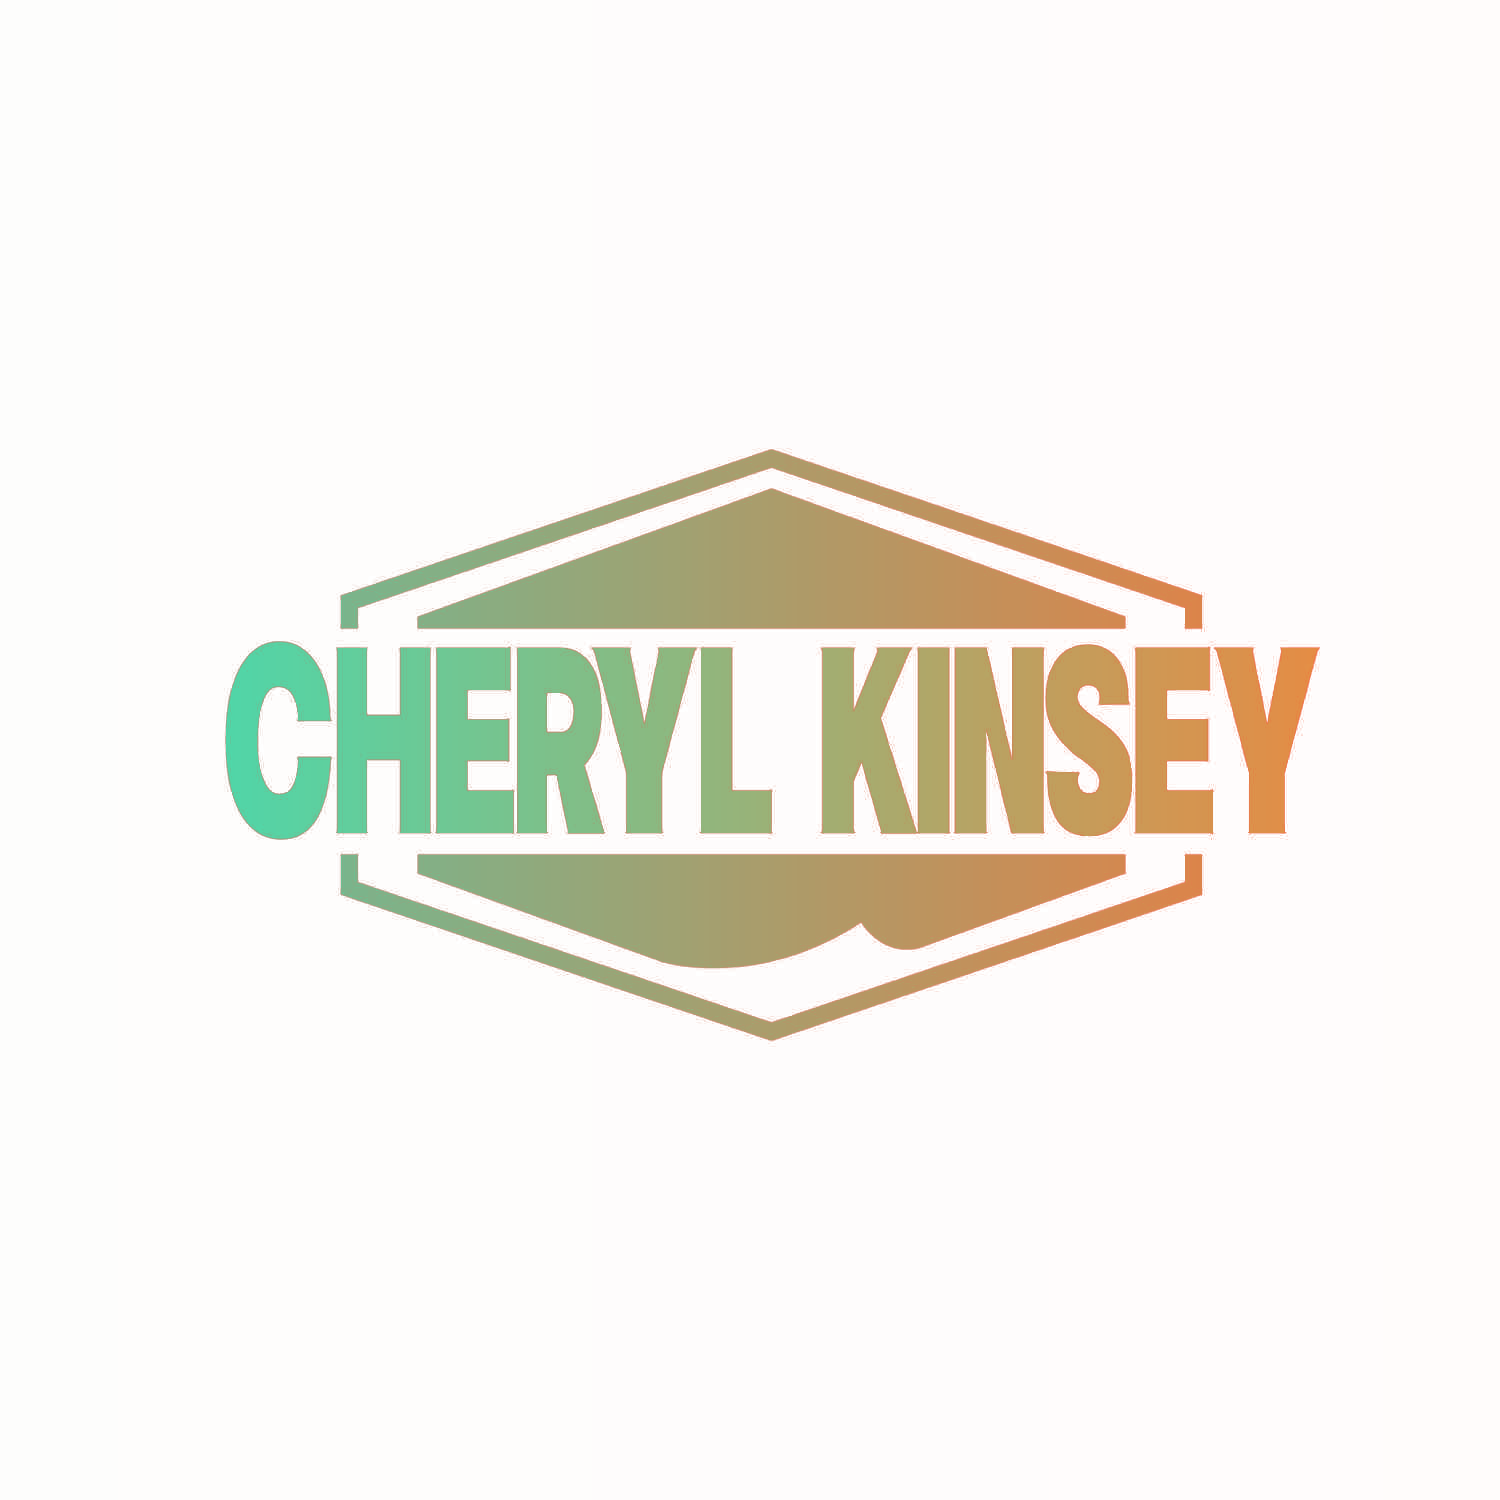 CHERYL KINSEY